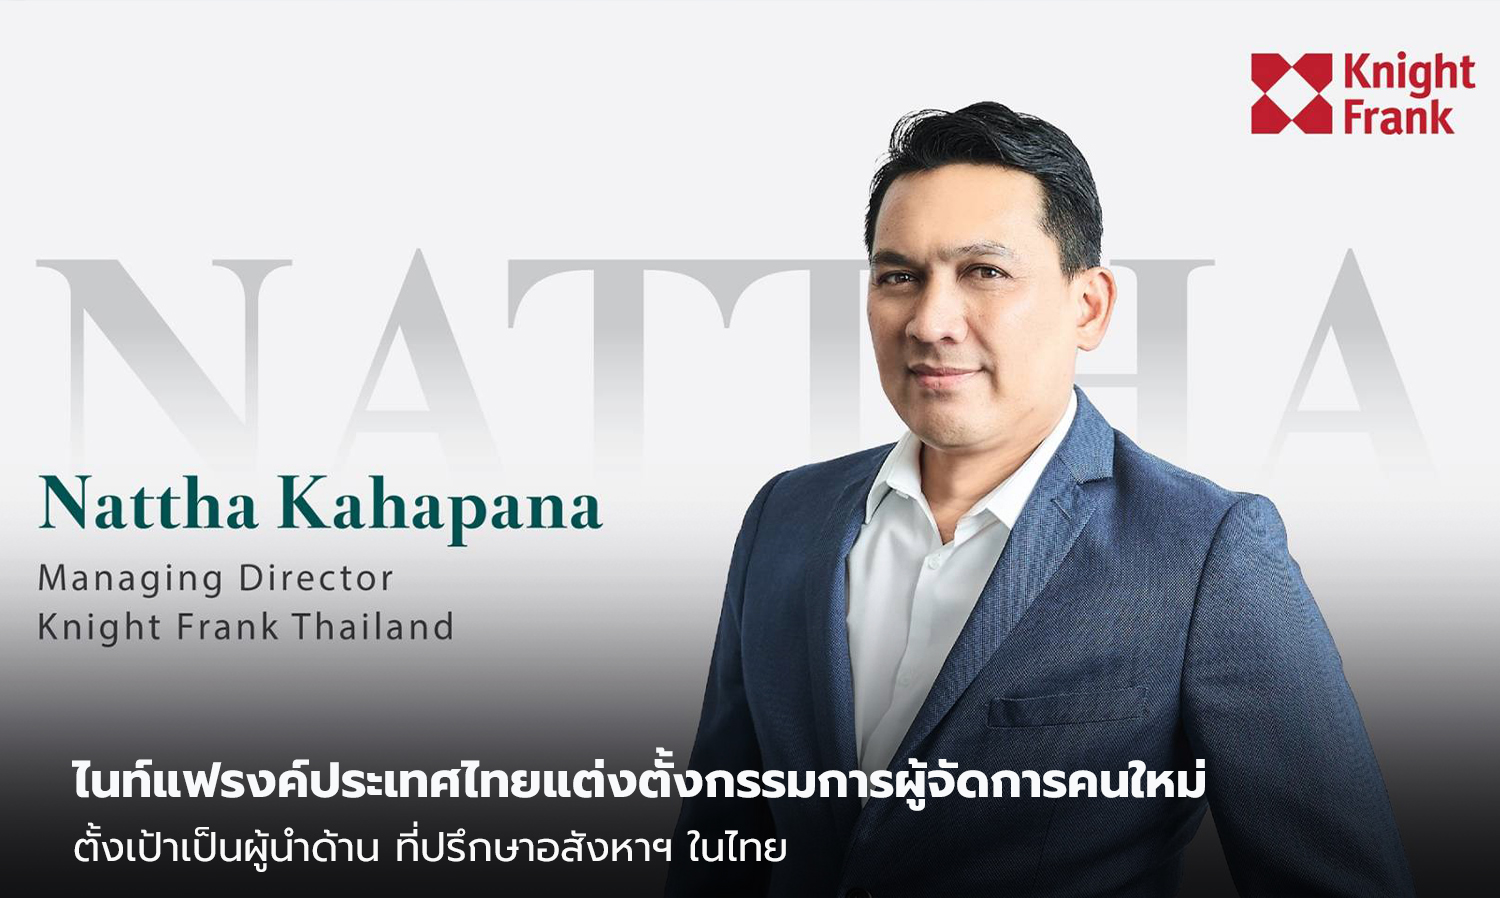 ไนท์แฟรงค์ประเทศไทยแต่งตั้งกรรมการผู้จัดการคนใหม่-ตั้งเป้าเป็นผู้นำด้าน-ที่ปรึกษาอสังหาฯ-ในไทย